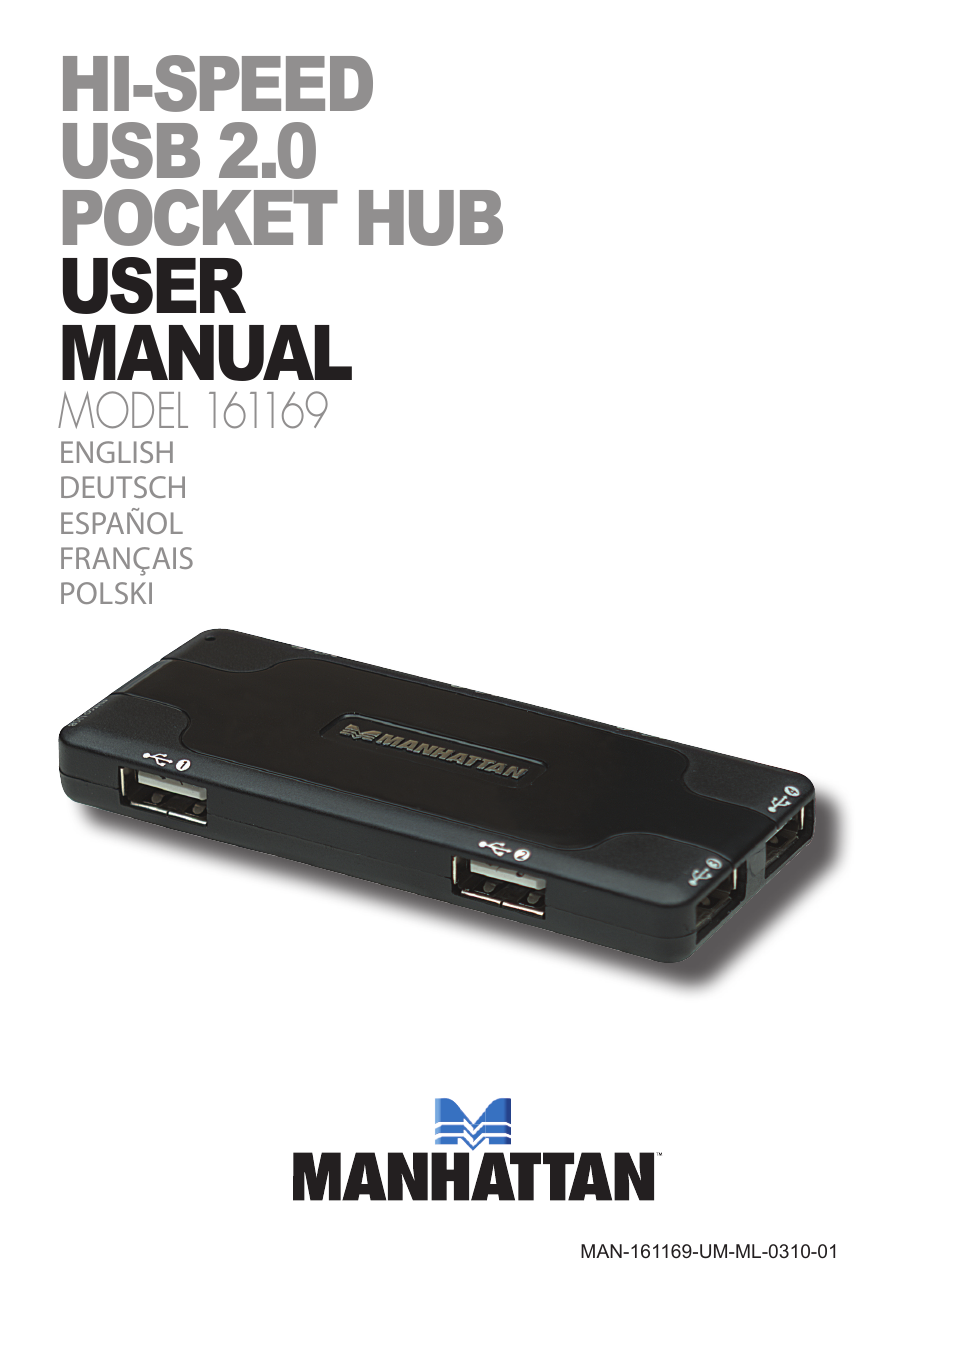 161169 Hi-Speed USB Pocket Hub - Manual (Multi)